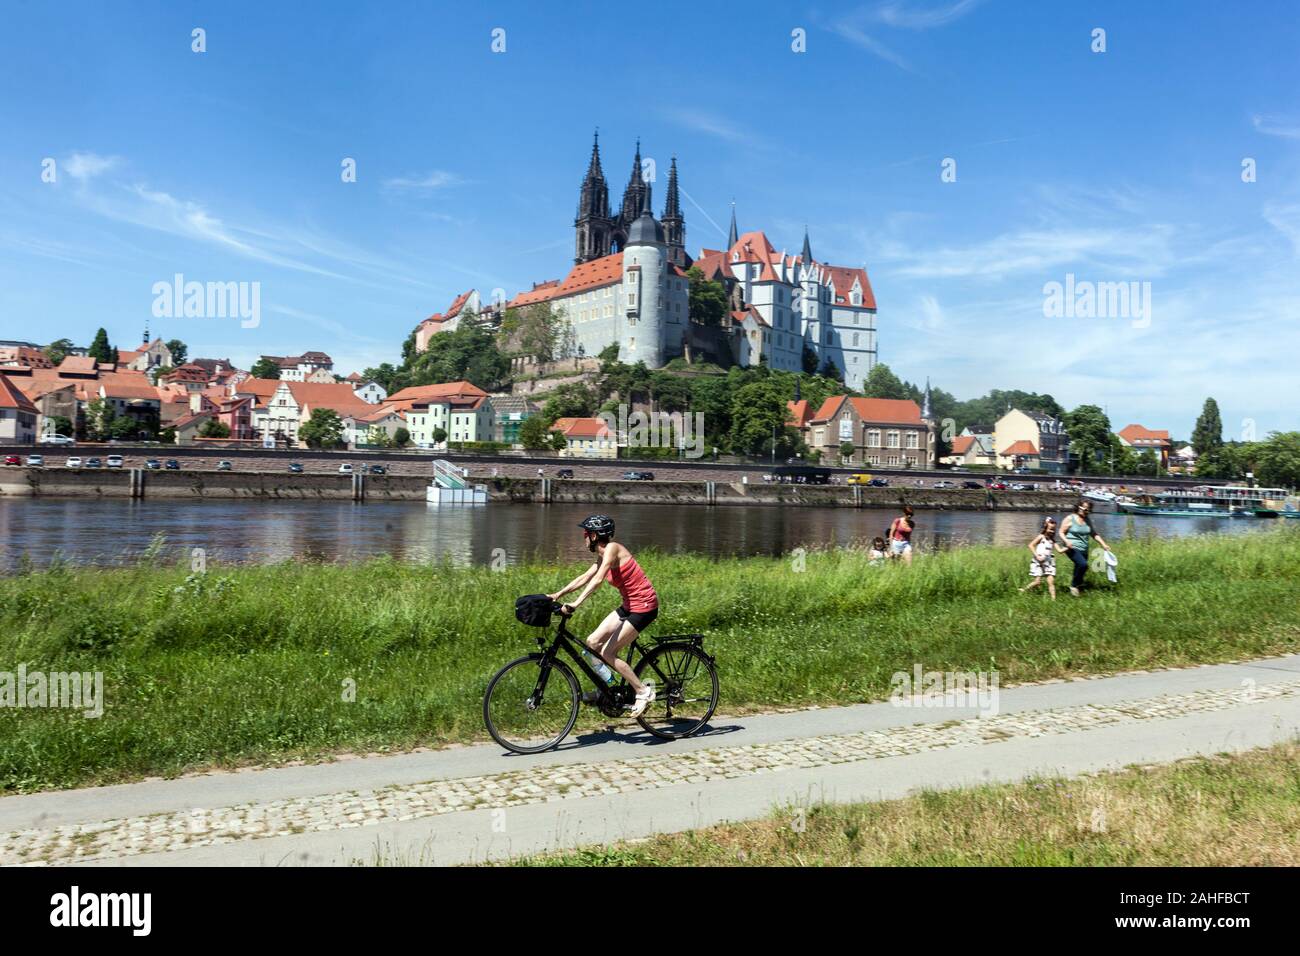 Gente en un prado en la bicicleta del río Elbe, Teenager montar en bicicleta en Alemania bicicleta ruta Meissen perfil Sajonia Alemania Elberdweg montar en bicicleta Foto de stock